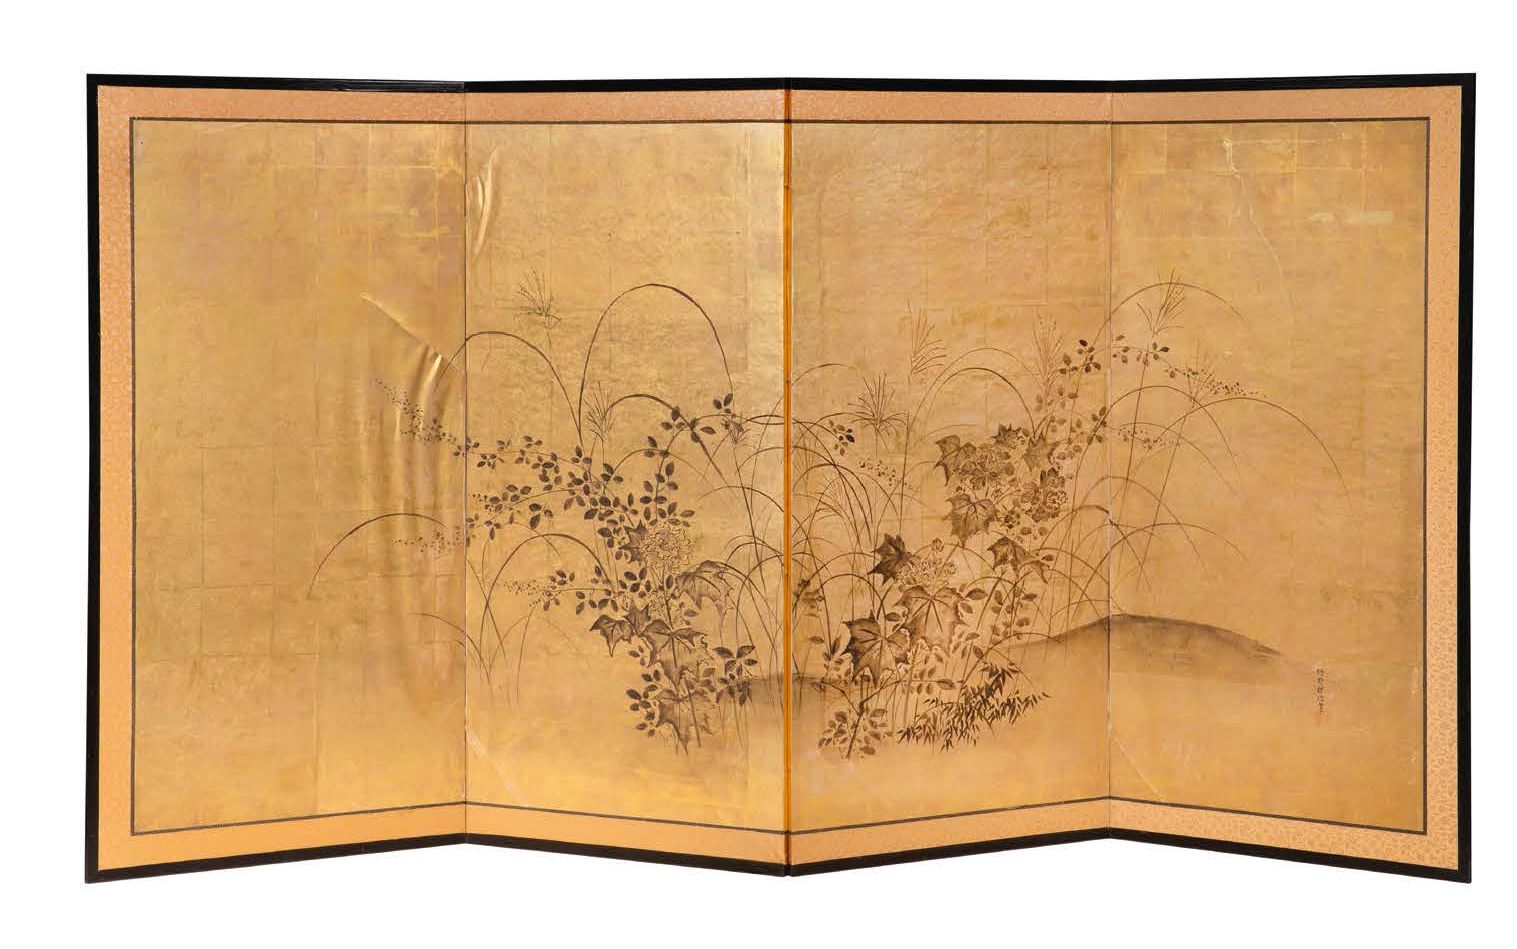 JAPON XIXE SIECLE Biombo de cuatro hojas pintado en tinta y colores claros sobre&hellip;